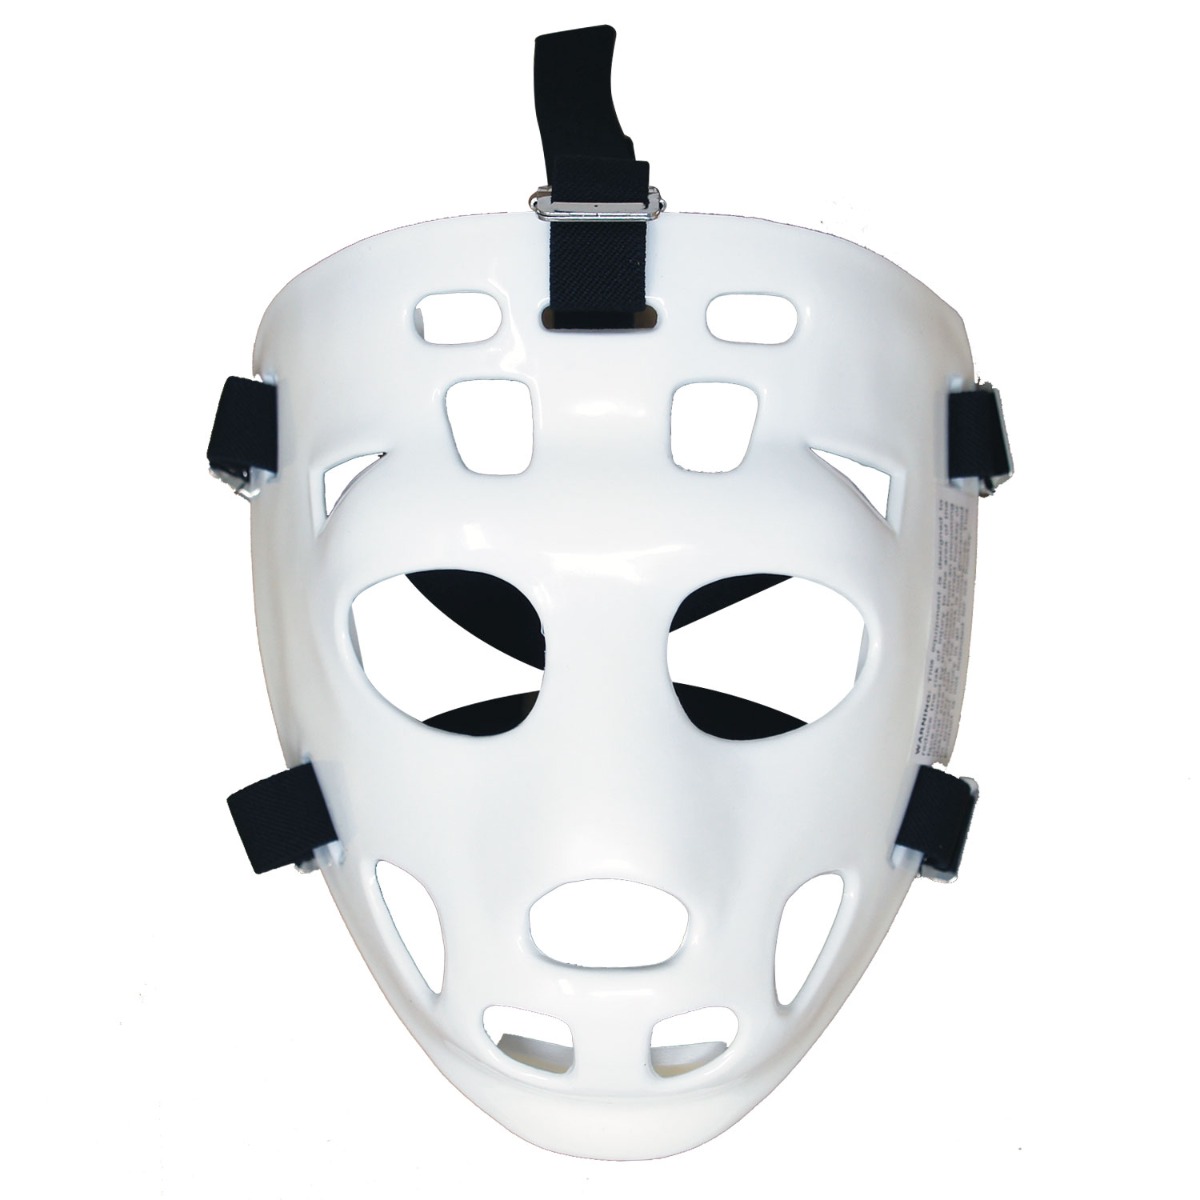 Goalie Face Mask for Floor Hockey